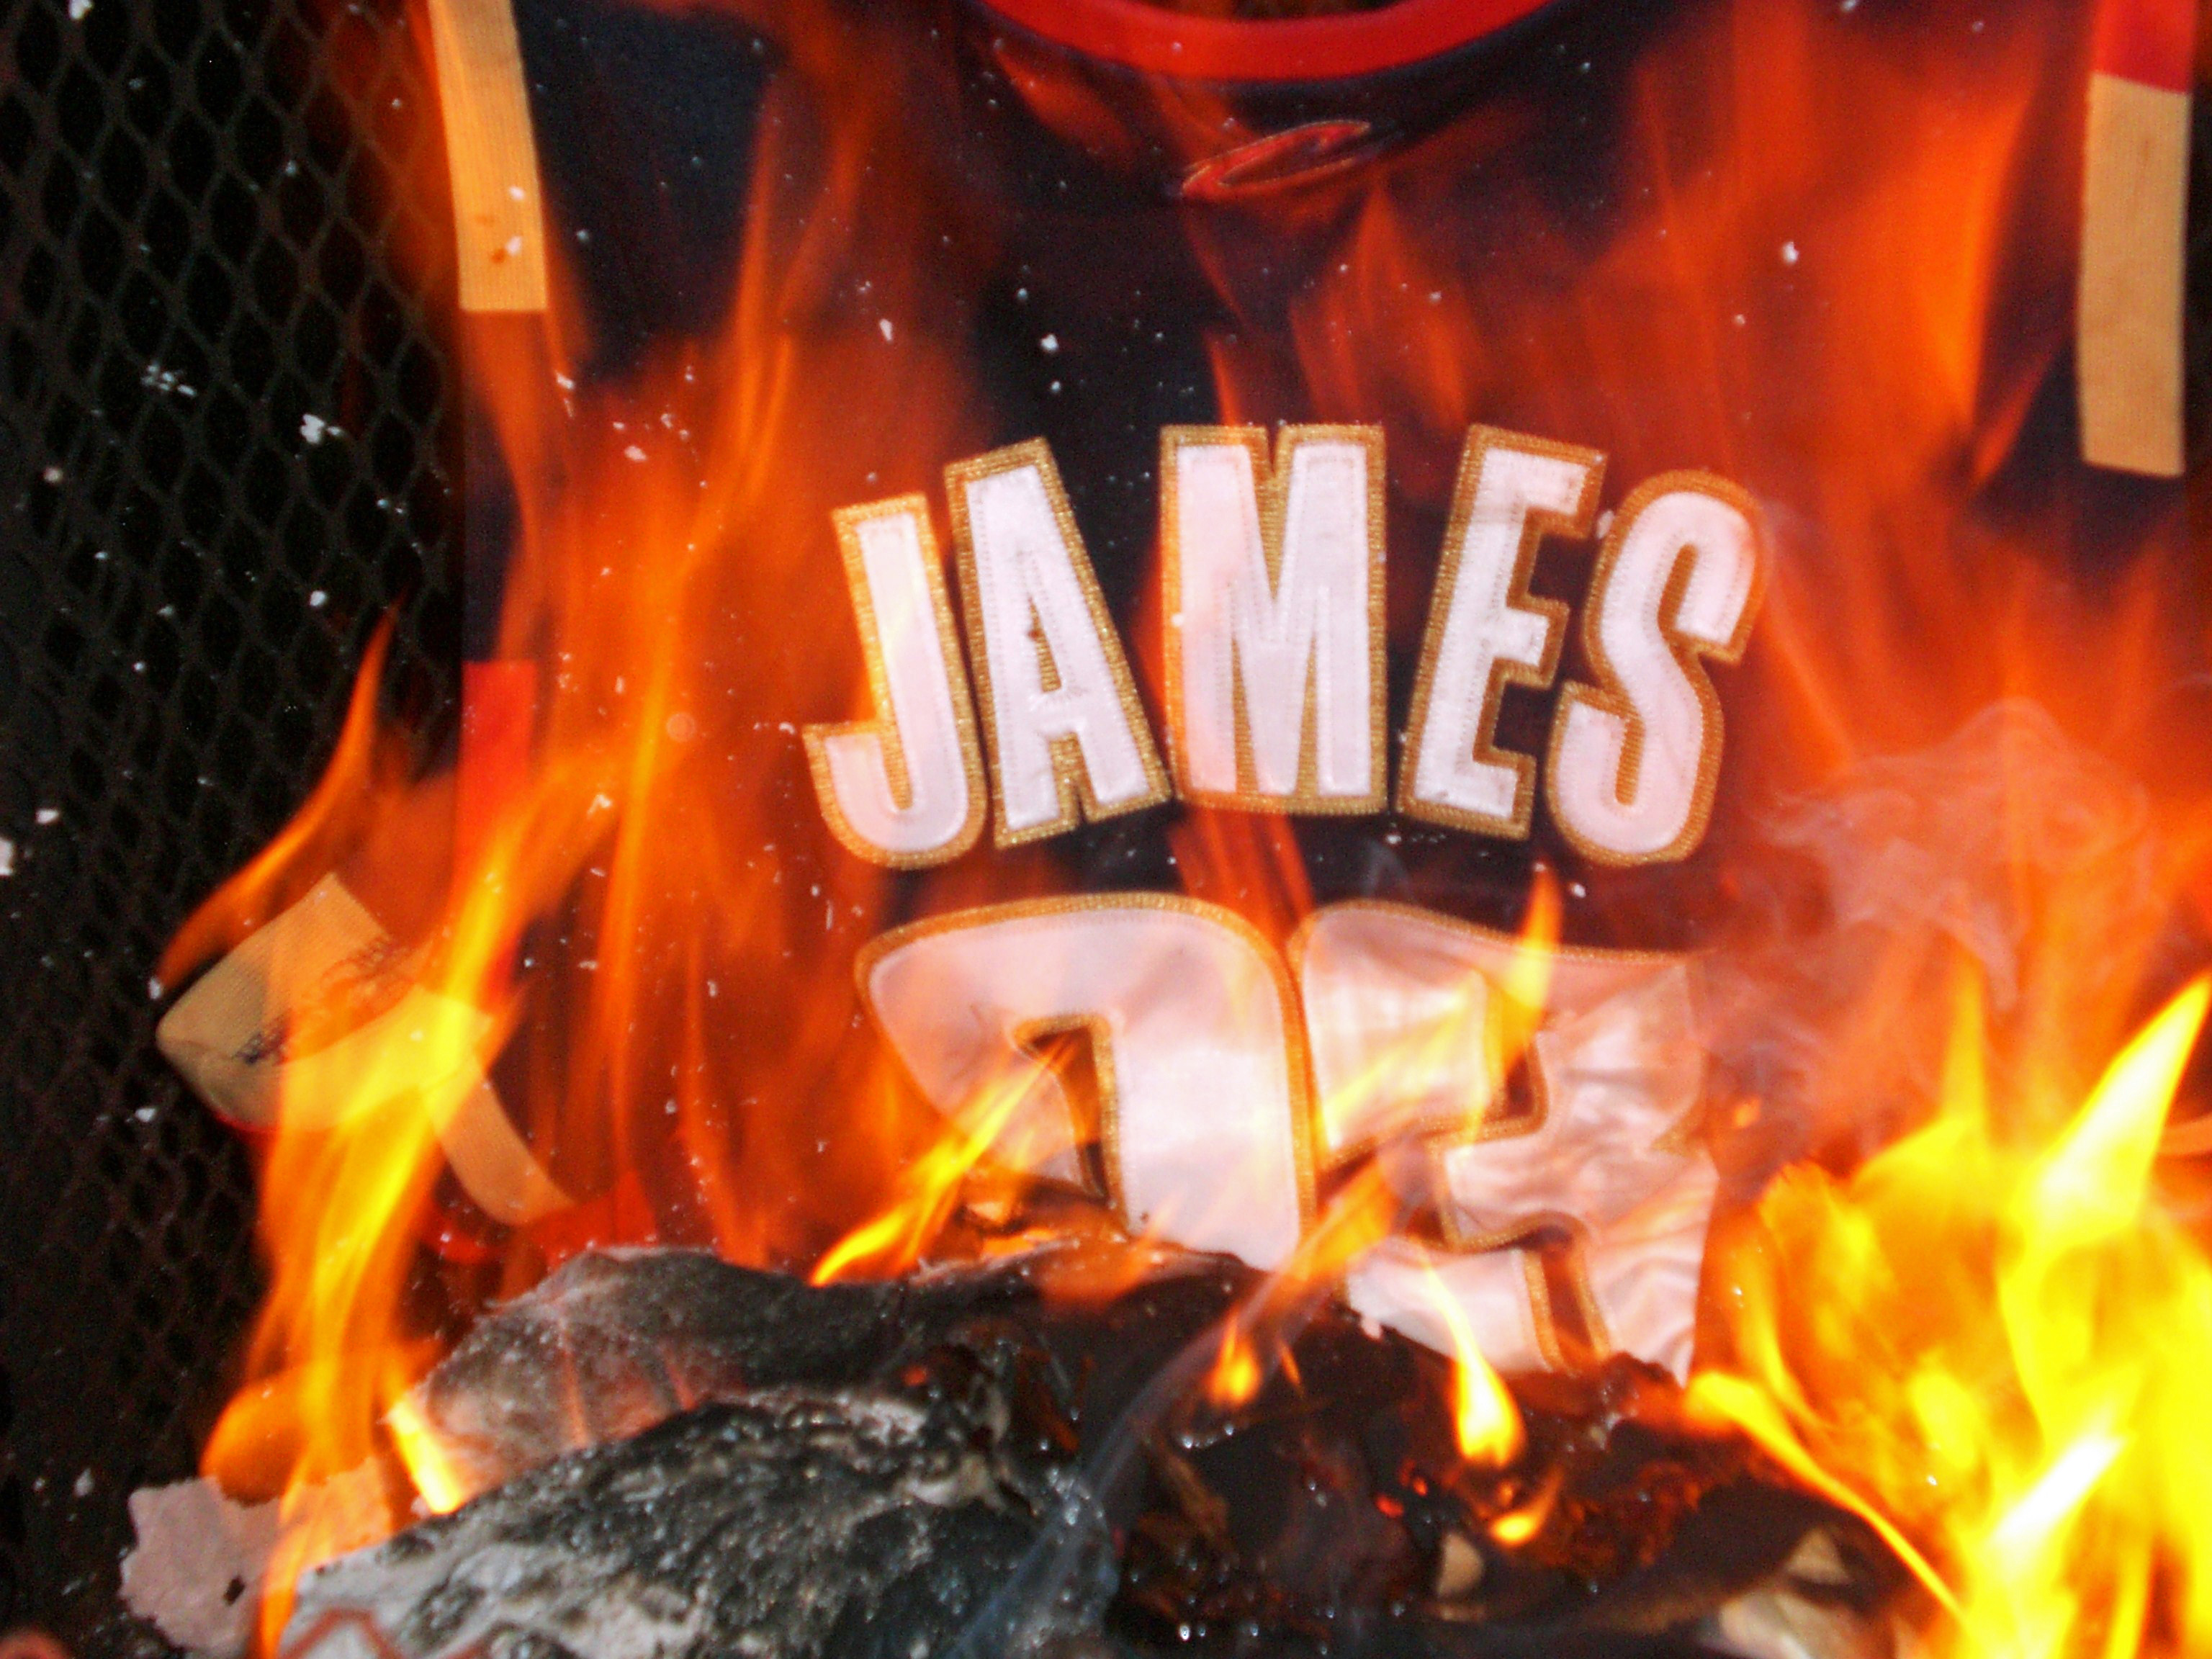 burning lebron jersey